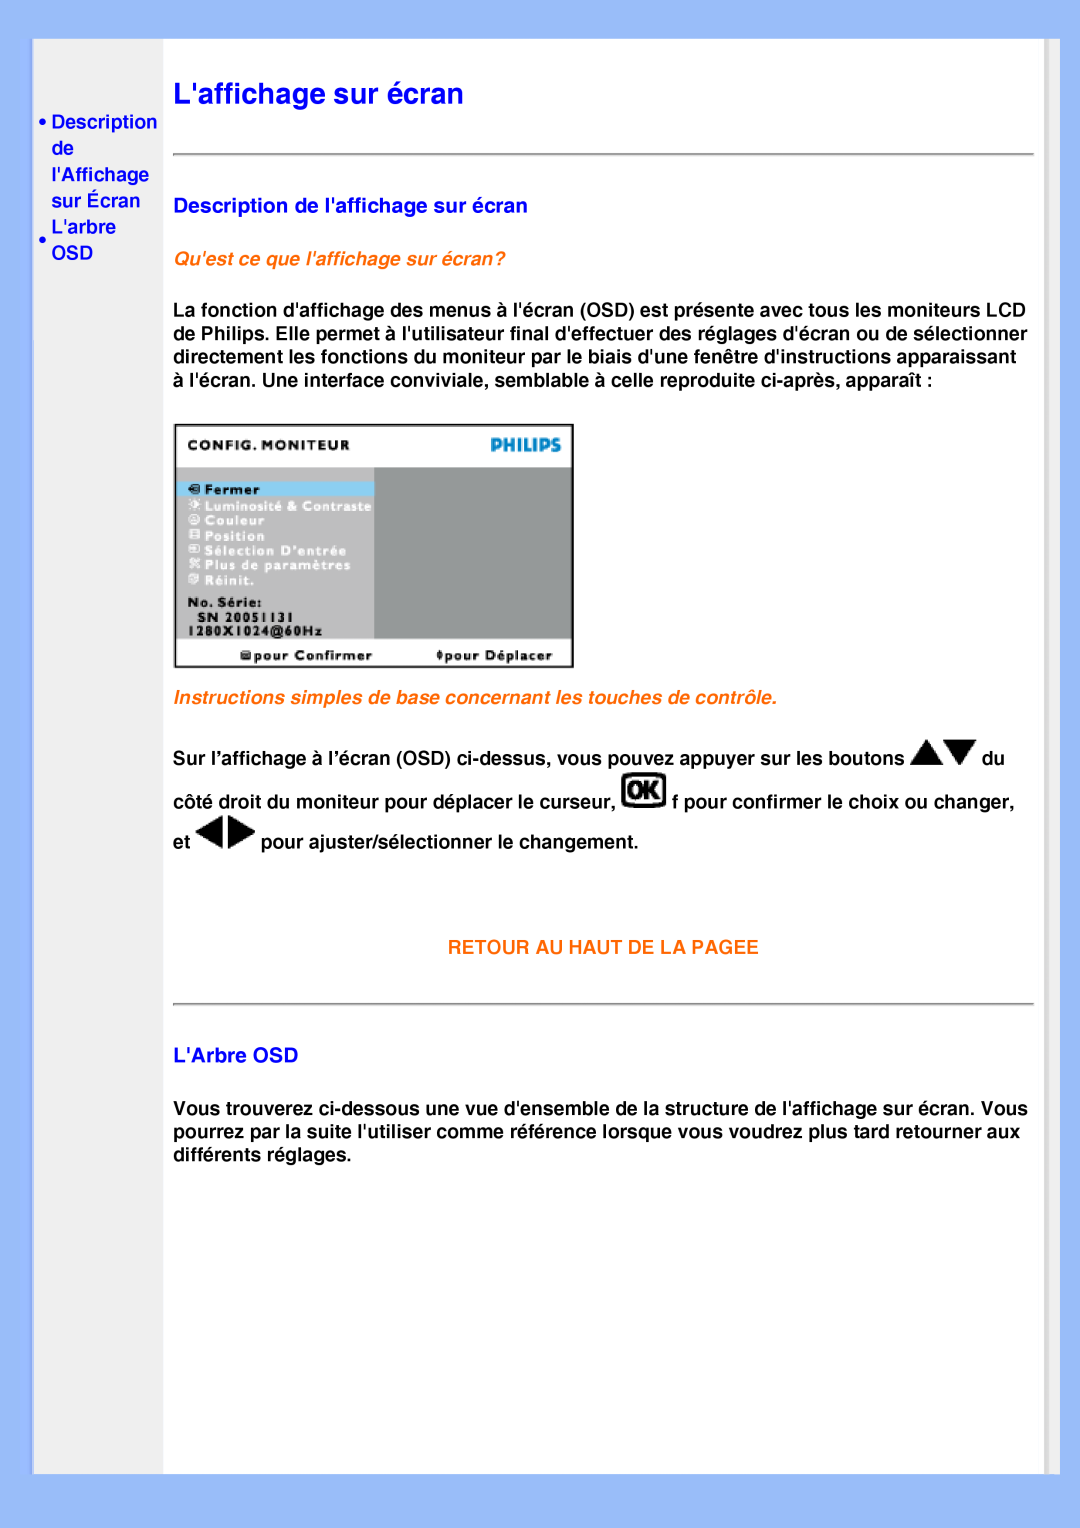 Philips 220VW8 user manual Laffichage sur écran, LarbreOSD, Quest ce que laffichage sur écran?, Retour Au Haut De La Pagee 